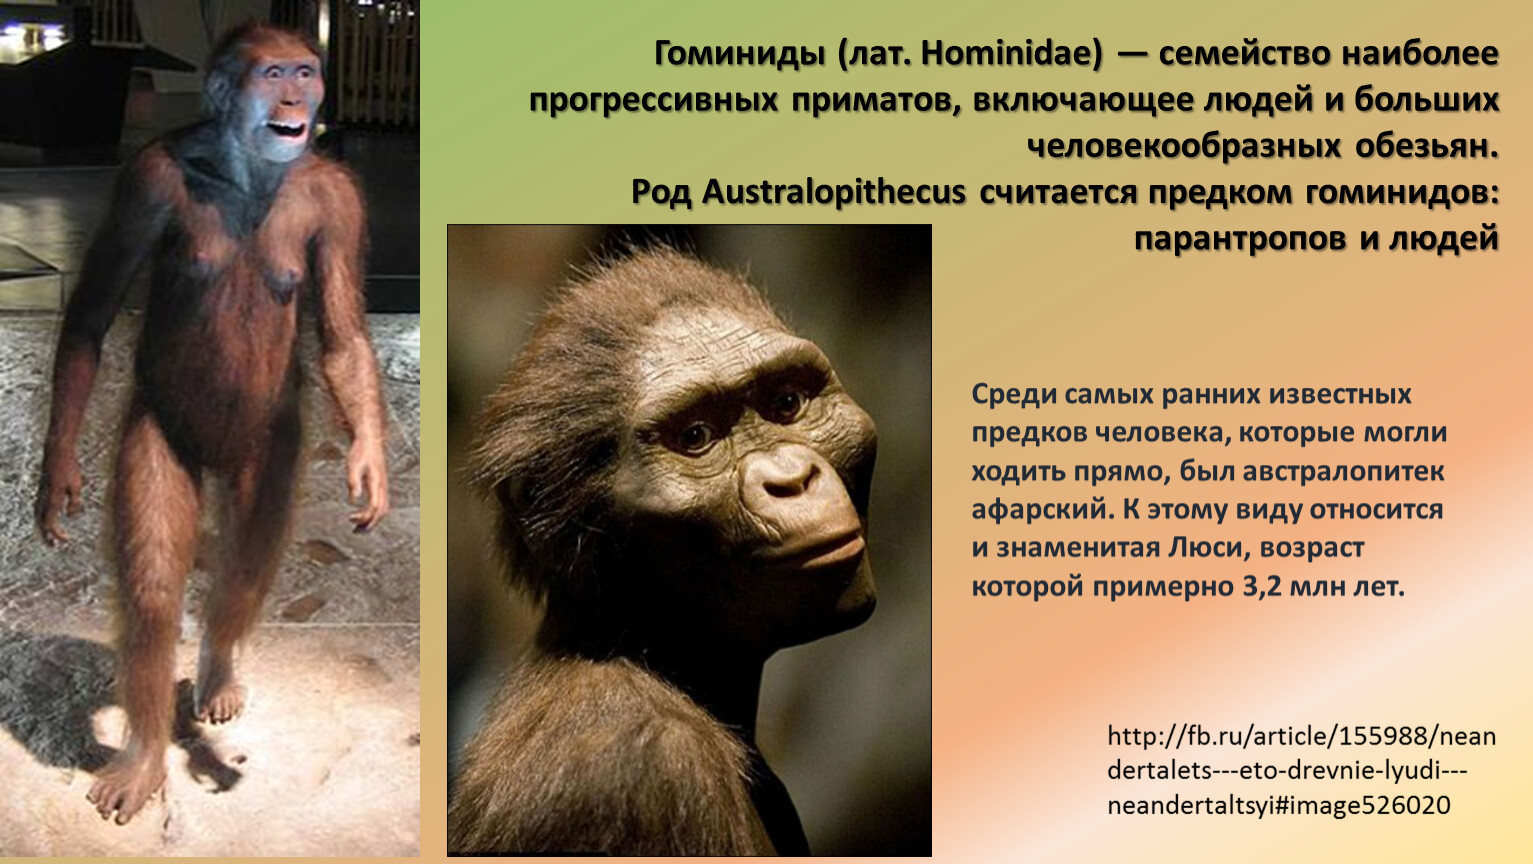 Перечислите человекообразных обезьян. Понгиды и гоминиды. Семейство гоминиды. Приматы гоминиды. Представители приматов гоминиды.